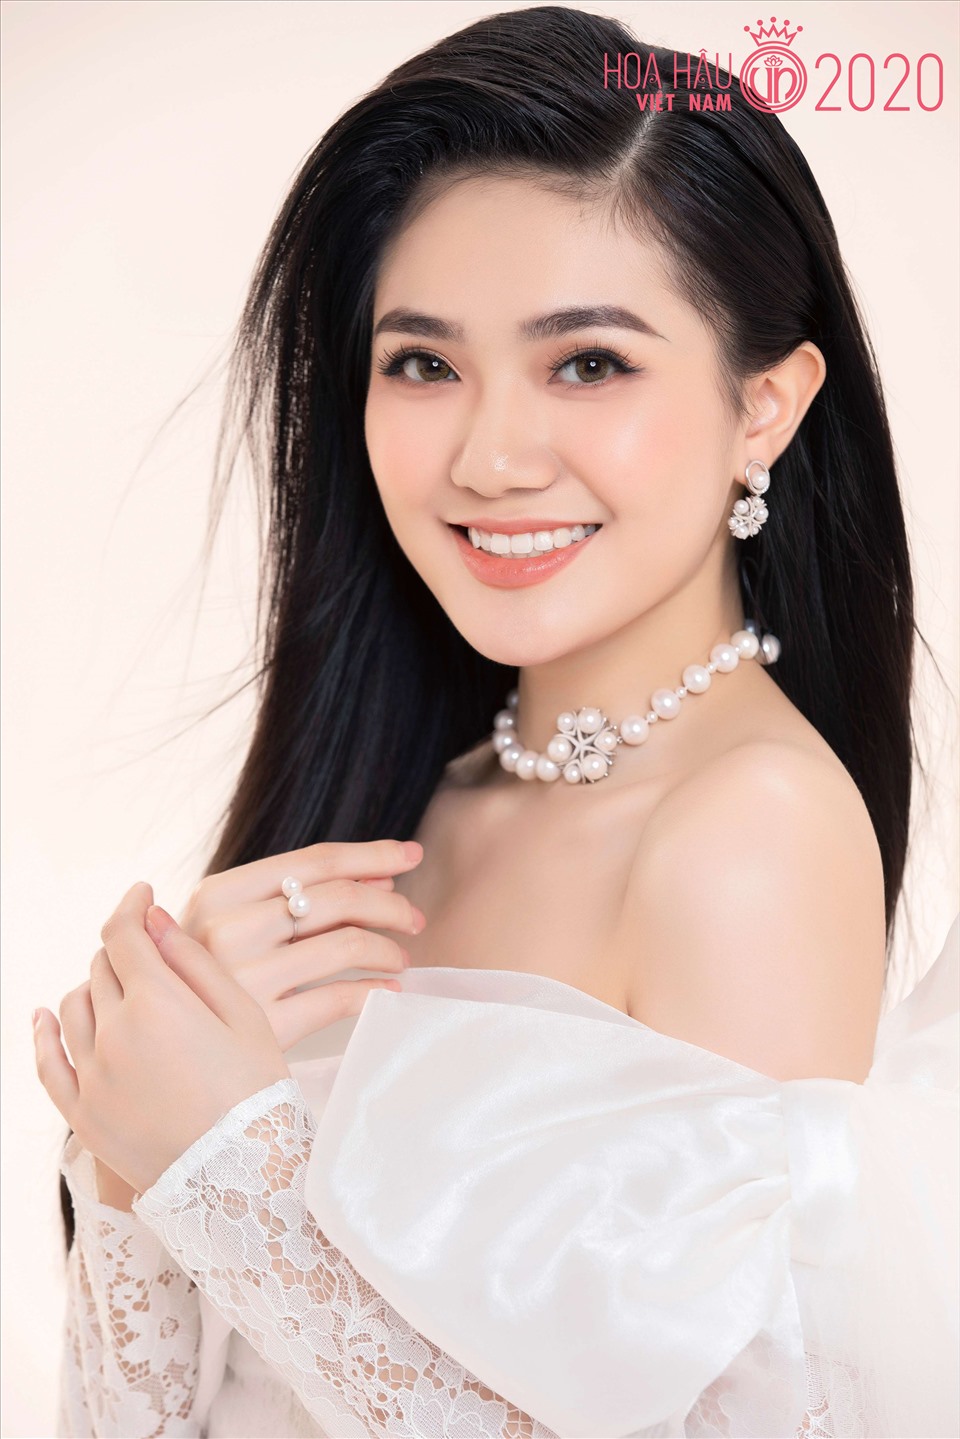 Nhan sắc top 3 Hoa hậu Việt Nam 2020 sau 2 năm đăng quang